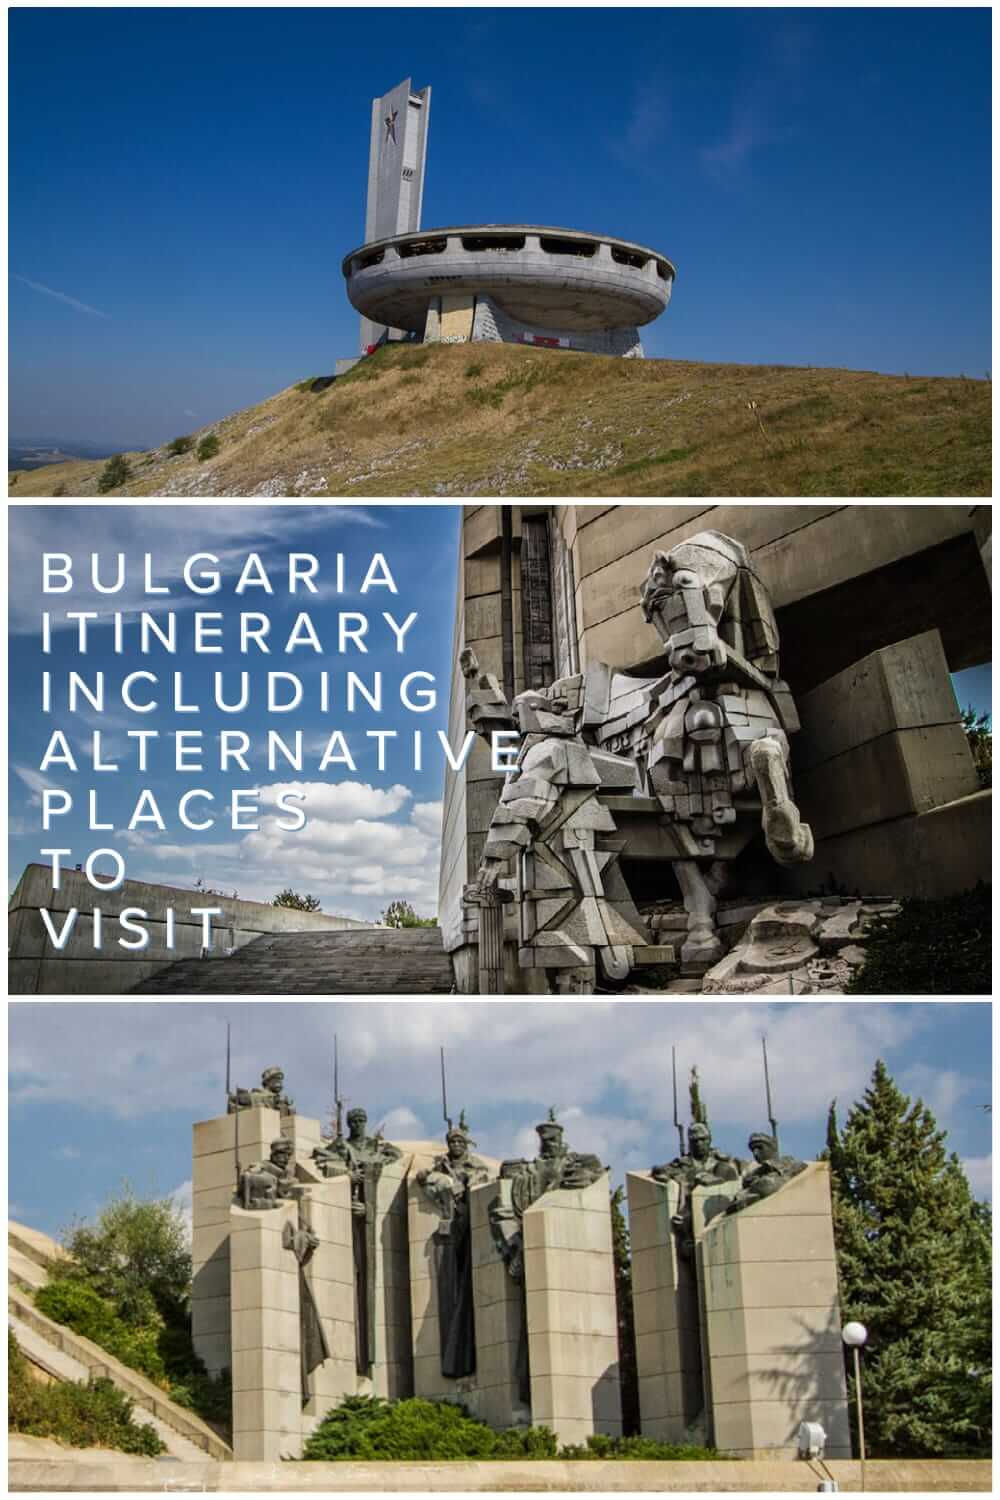 全面的保加利亚行程为背包客和独立旅行者到保加利亚。在保加利亚2 - 3周内可以看到什么#旅行#背包旅行#旅行计划#巴尔干#替代